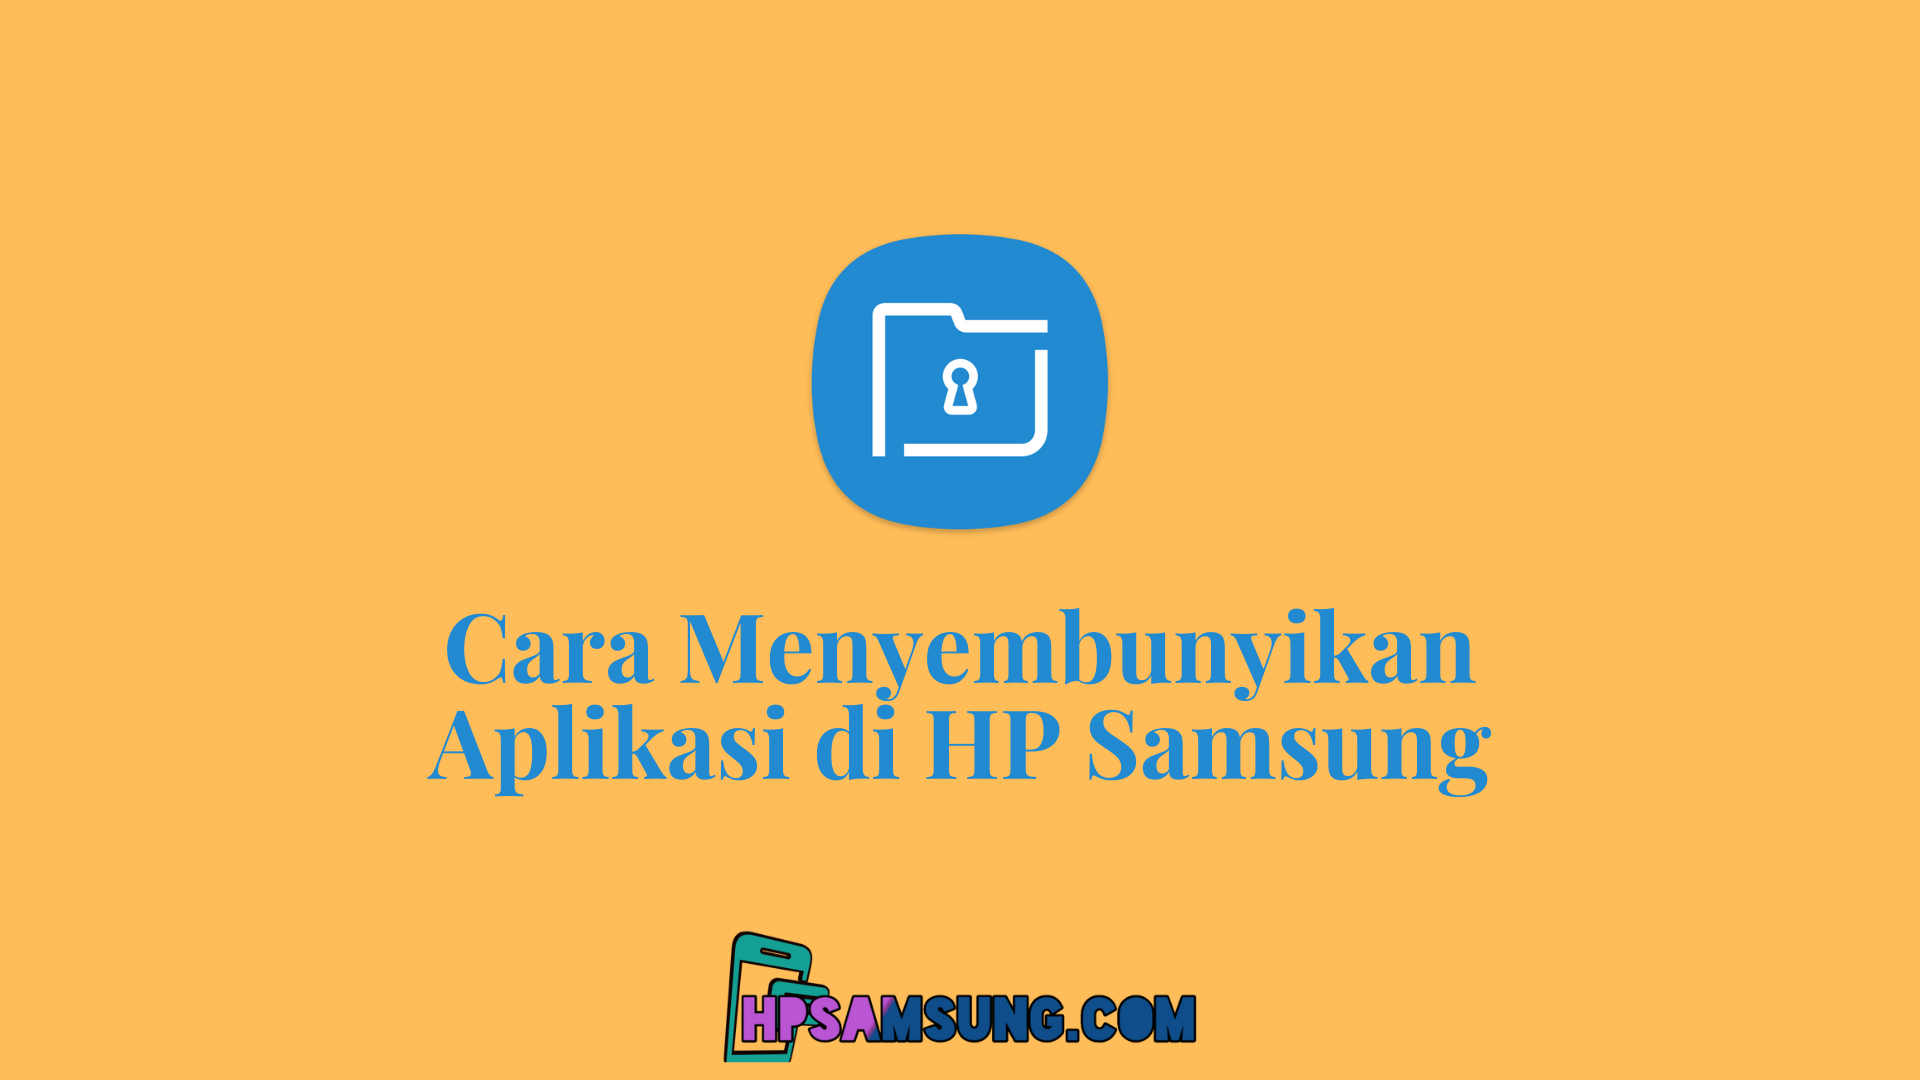 Cara Menyembunyikan Aplikasi Di Hp Samsung A20. 4 Cara Menyembunyikan Aplikasi di HP Samsung [Semua Seri]